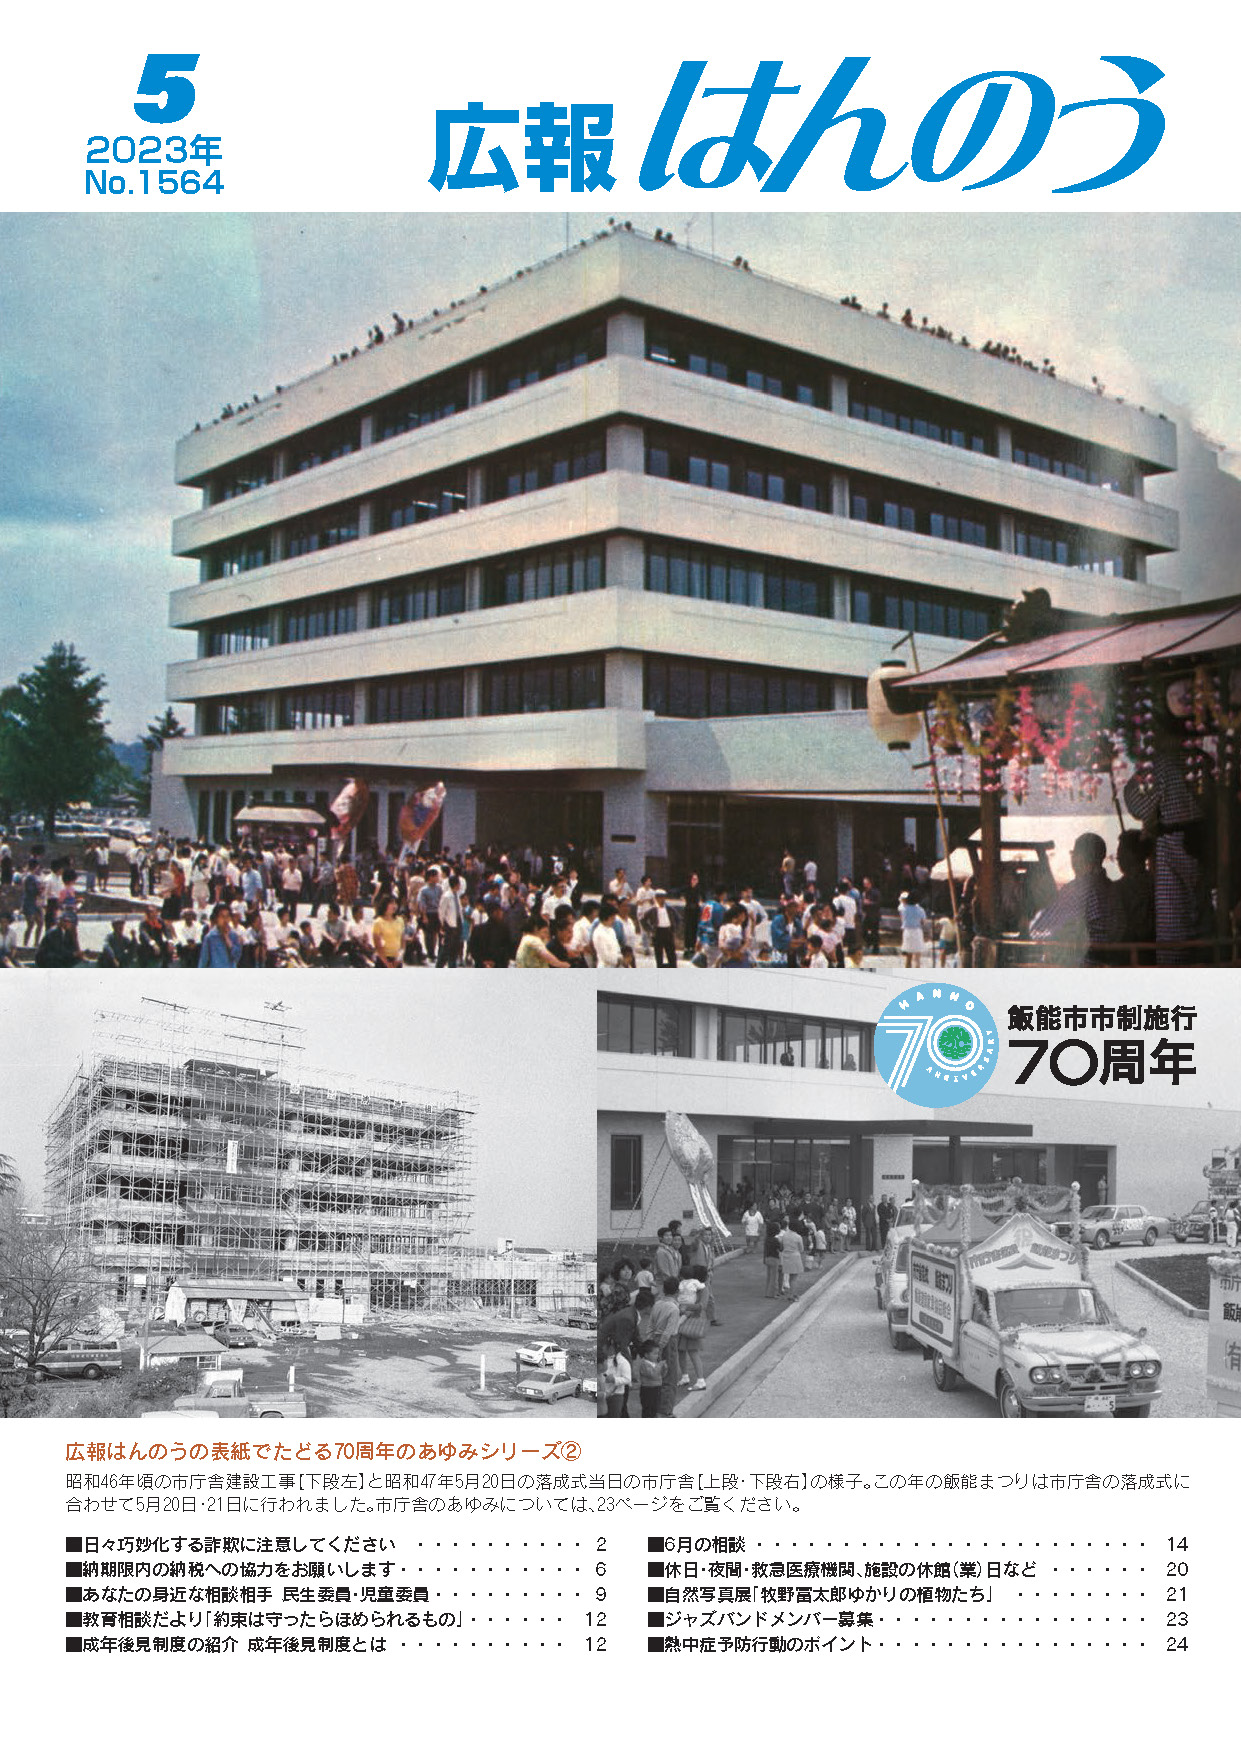 広報はんのう2023年5月1日号の表紙です。広報はんのうの表紙でたどる70周年のあゆみシリーズ2として、昭和46年頃の市庁舎建設工事と昭和47年5月20日の落成式当日の様子が撮影された写真が表示されています。